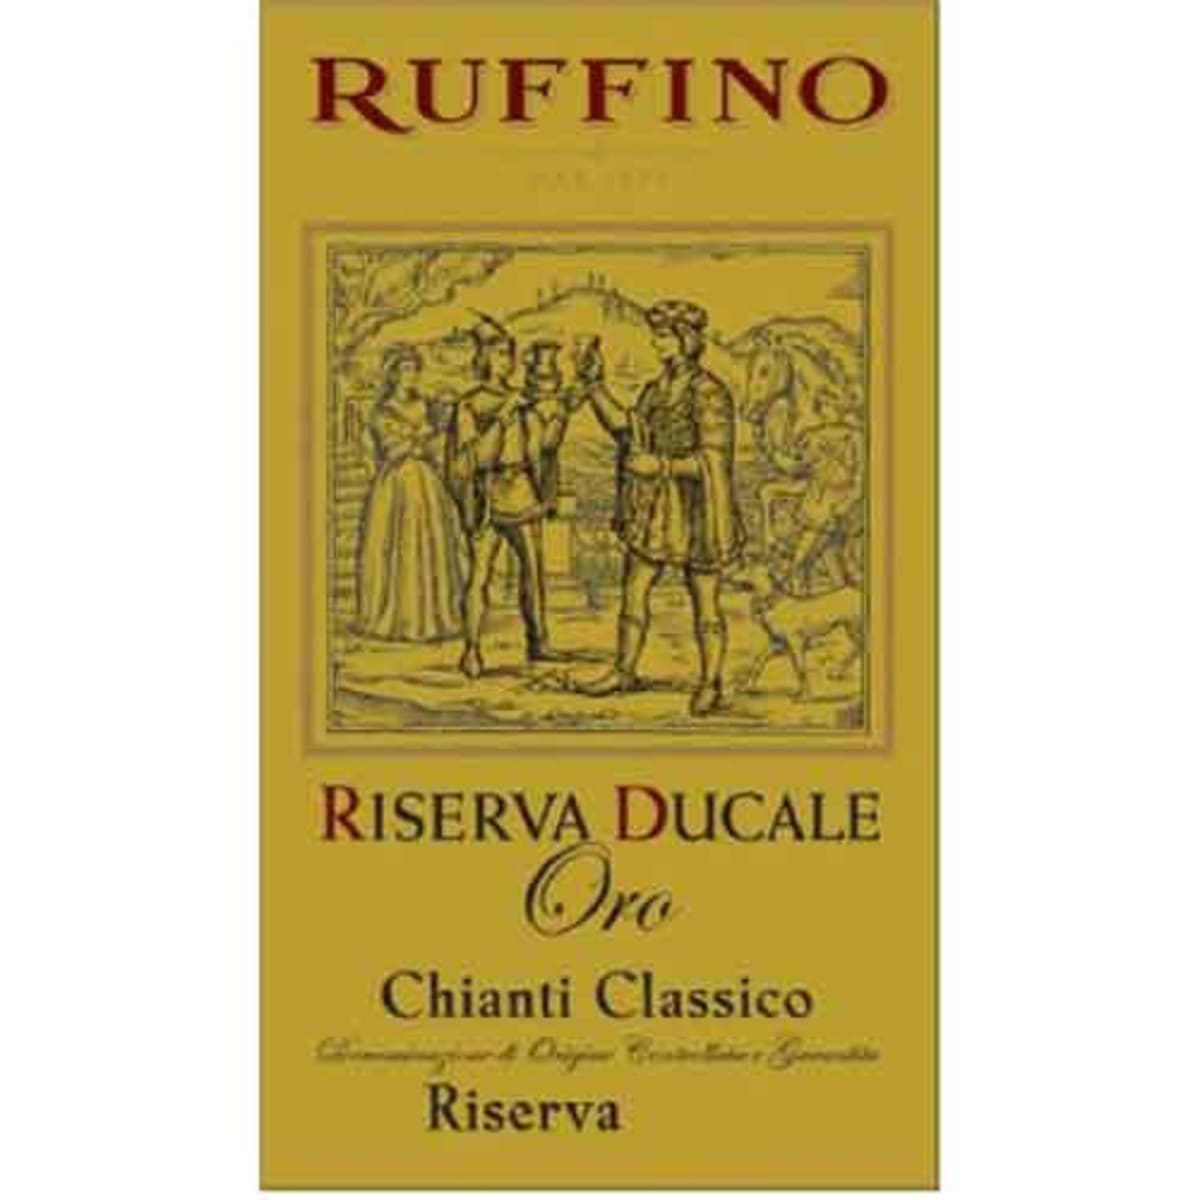 Ruffino Ducale Oro Chianti Classico Riserva 2010 Front Label